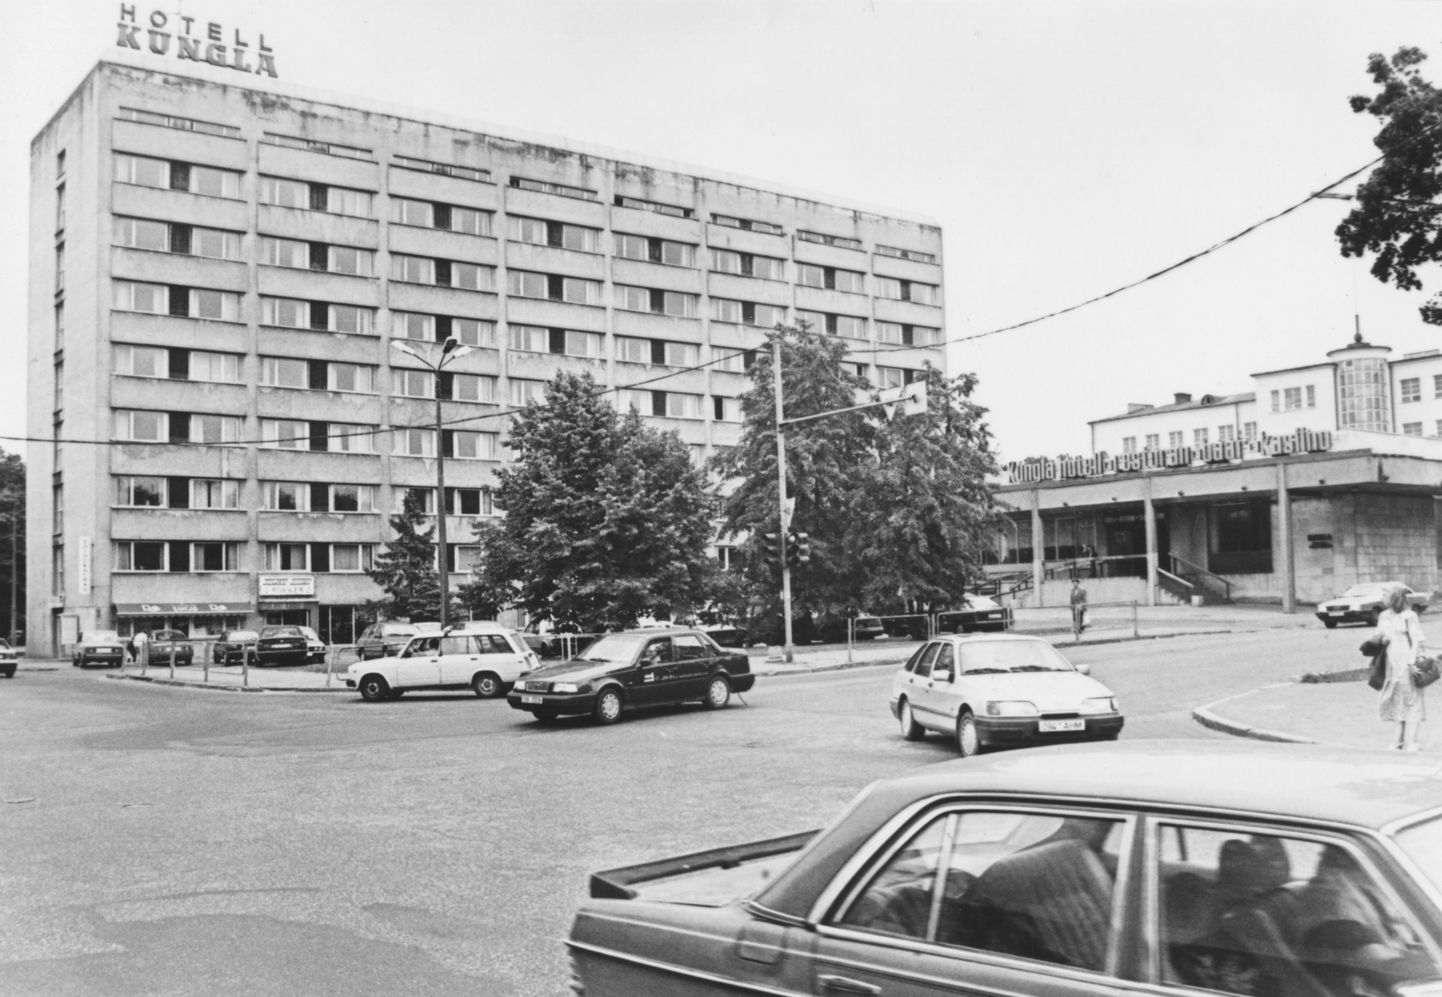 Так выглядел отель Kungla в 80-х или 90-х, потом он был переименован в Reval Park Hotel & Casino, а сейчас на его месте стоит новенький Hilton